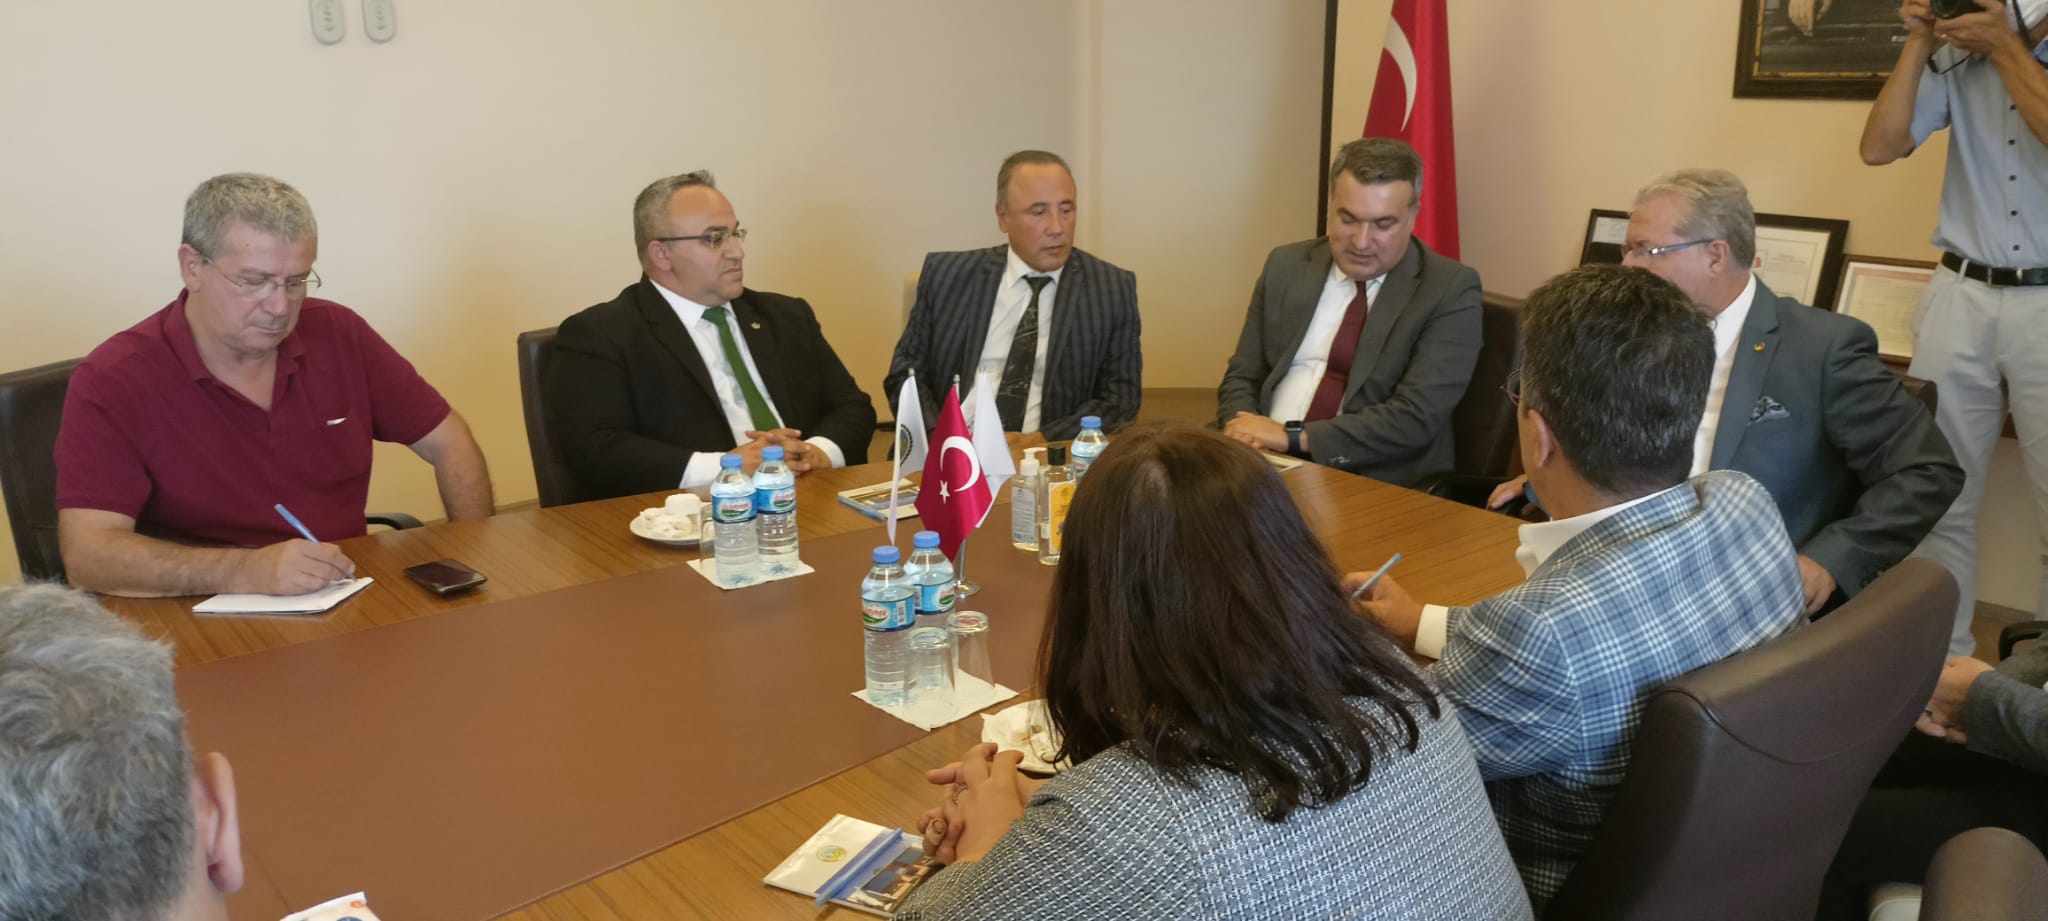 Tekirdağ Ticaret Borsası Başkanı Osman Sarı ve Yürütme Kurulu Üyelerine Ziyarette bulunduk